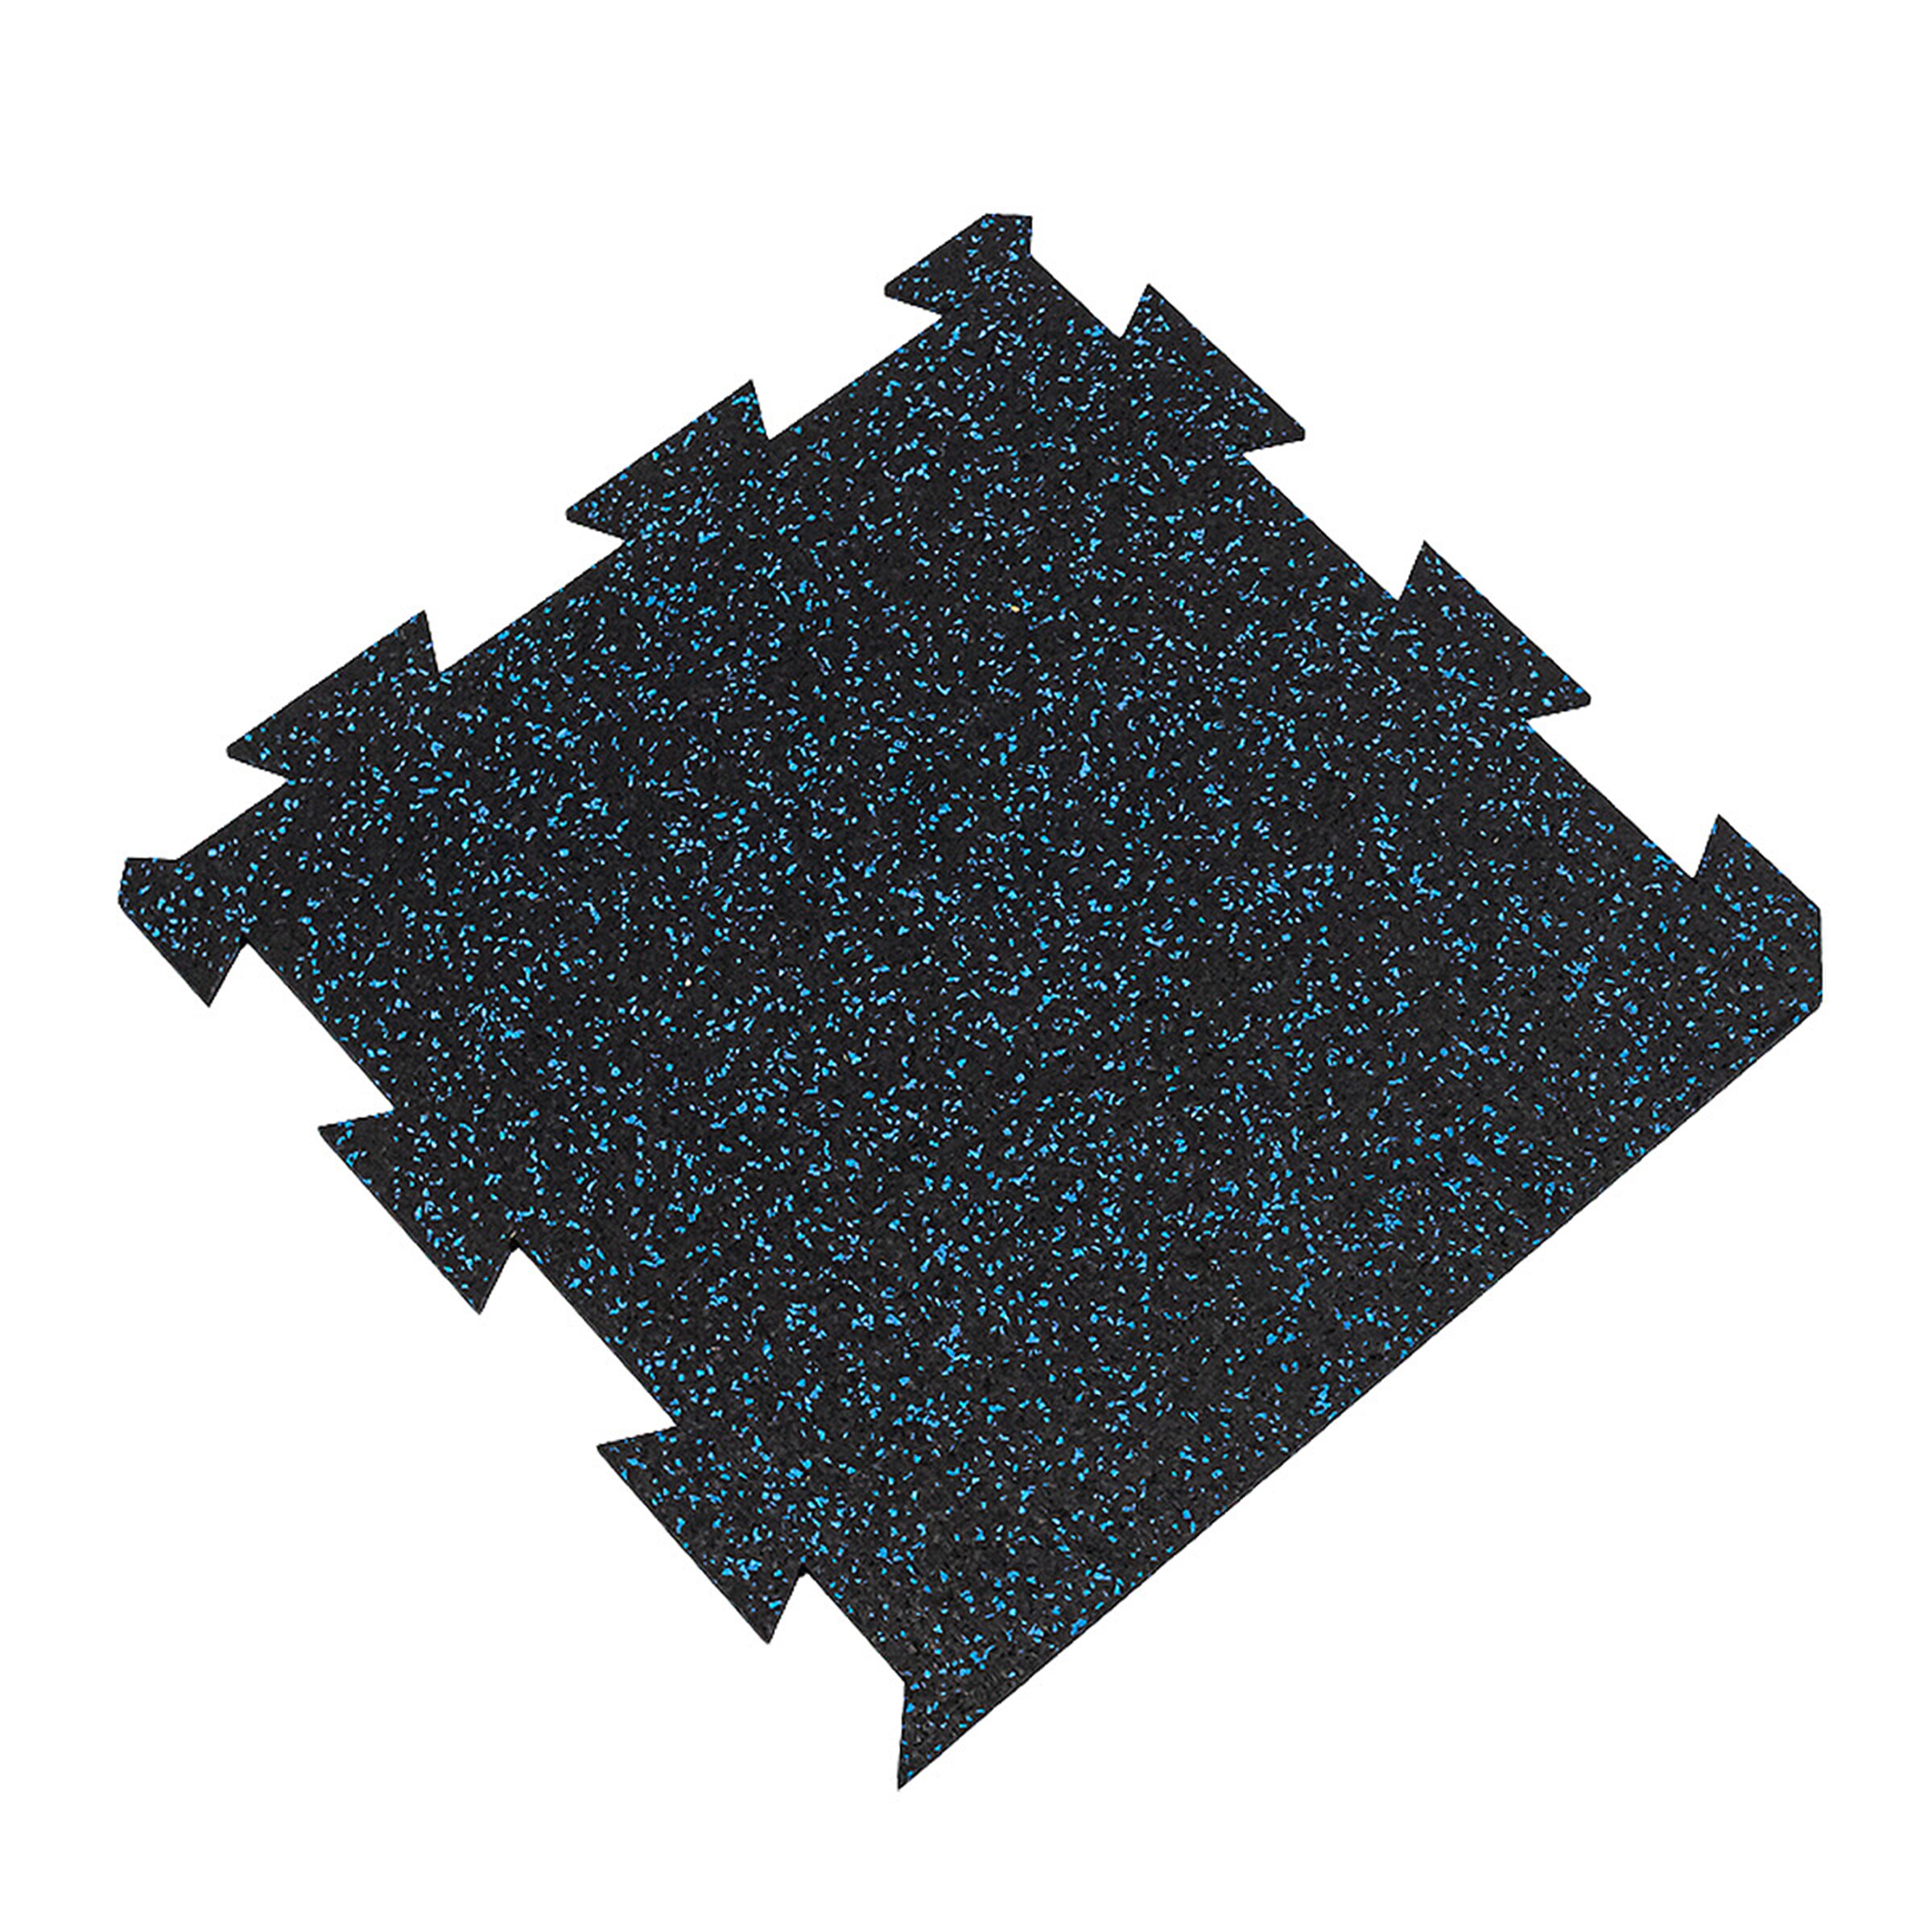 Čierno-modrá gumová modulová puzzle dlažba (okraj) FLOMA FitFlo SF1050 - dĺžka 50 cm, šírka 50 cm, výška 1 cm